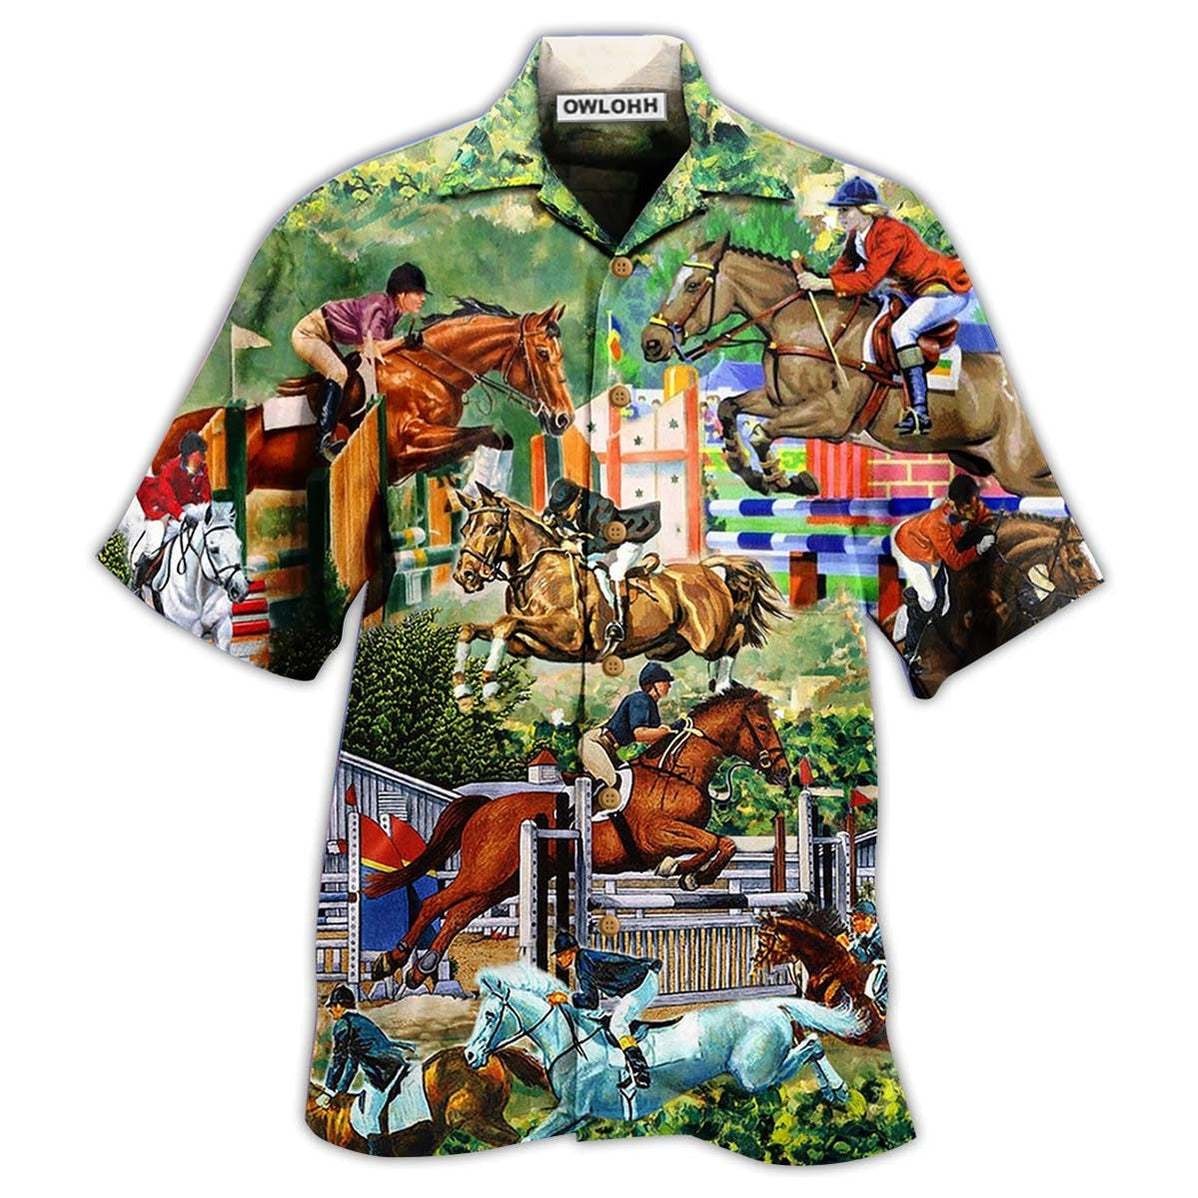 Hawaiian Shirt / Adults / S Horse And Human Funny - Hawaiian Shirt - Owls Matrix LTD